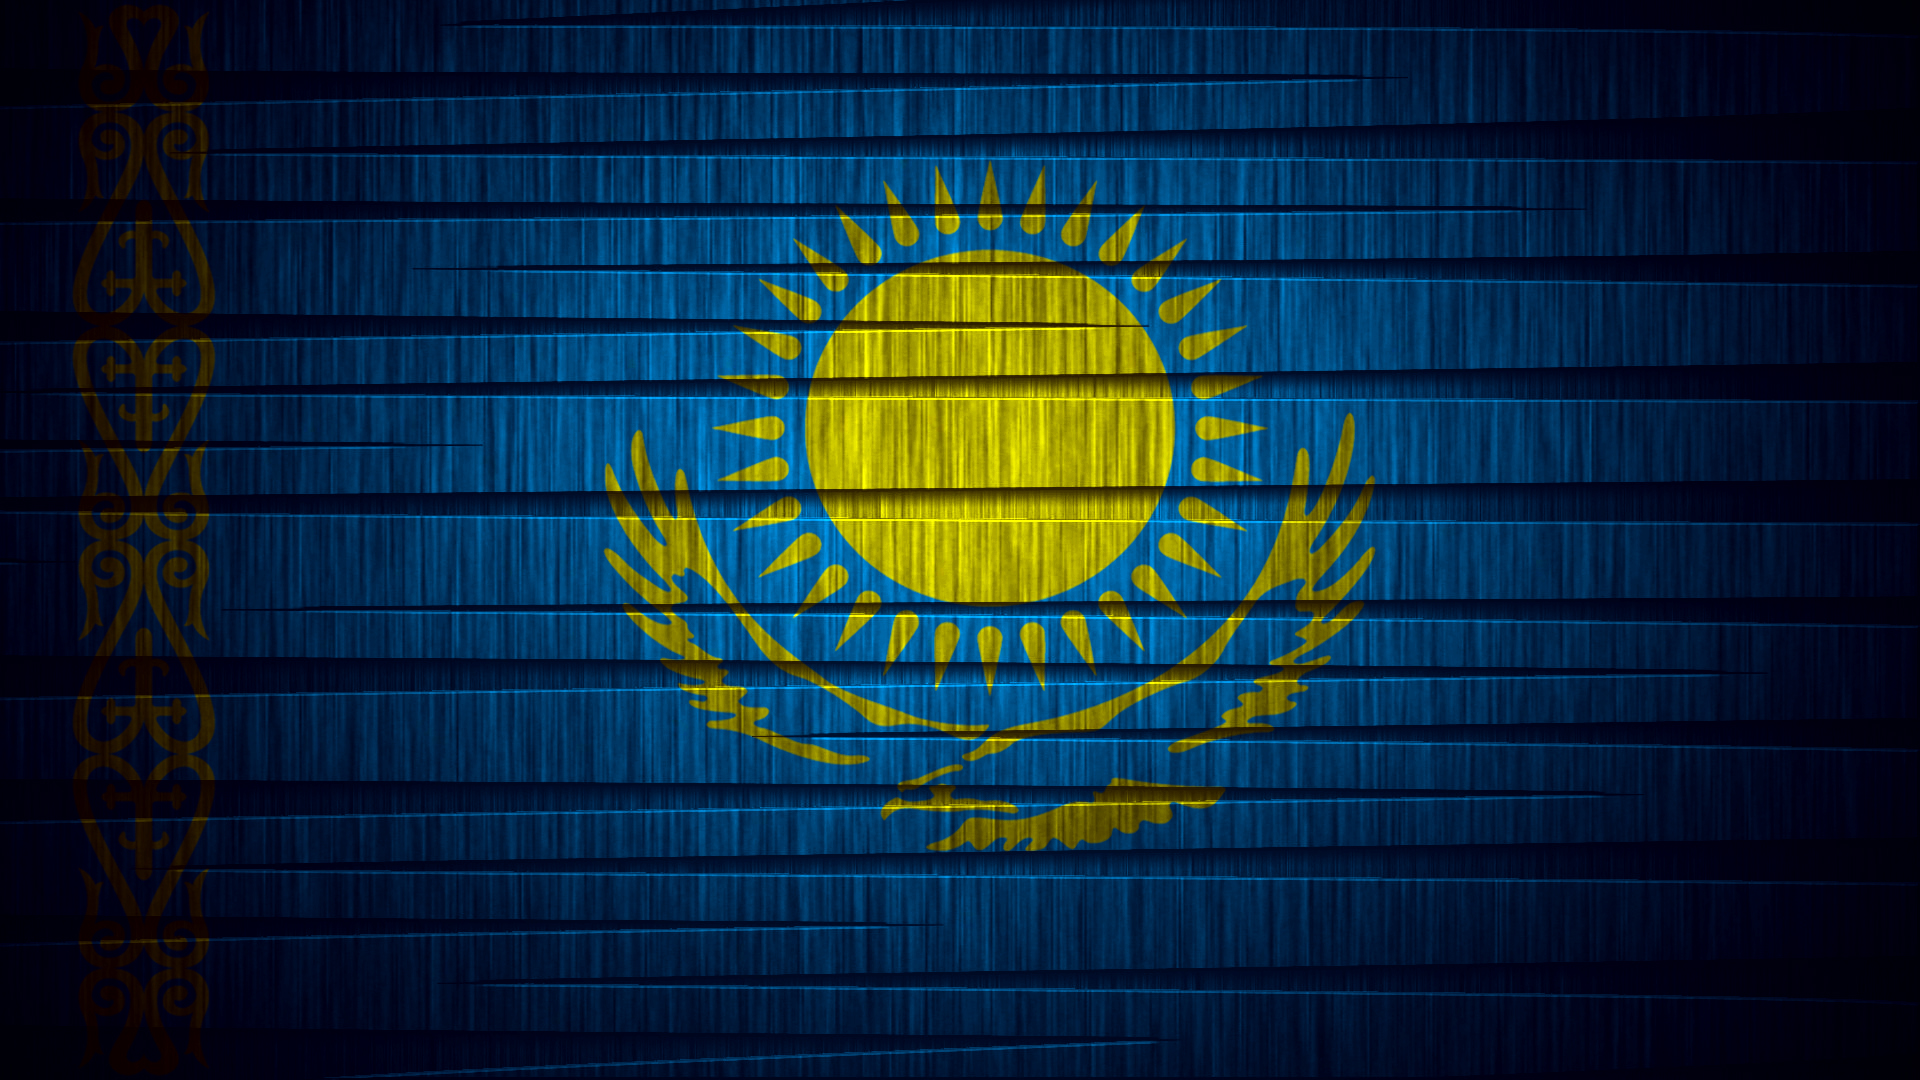 Καζακστάν: “Συμφωνία με την EBU για συμμετοχή στη Eurovision 2019”, επικαλείται τηλεοπτικό κανάλι της χώρας